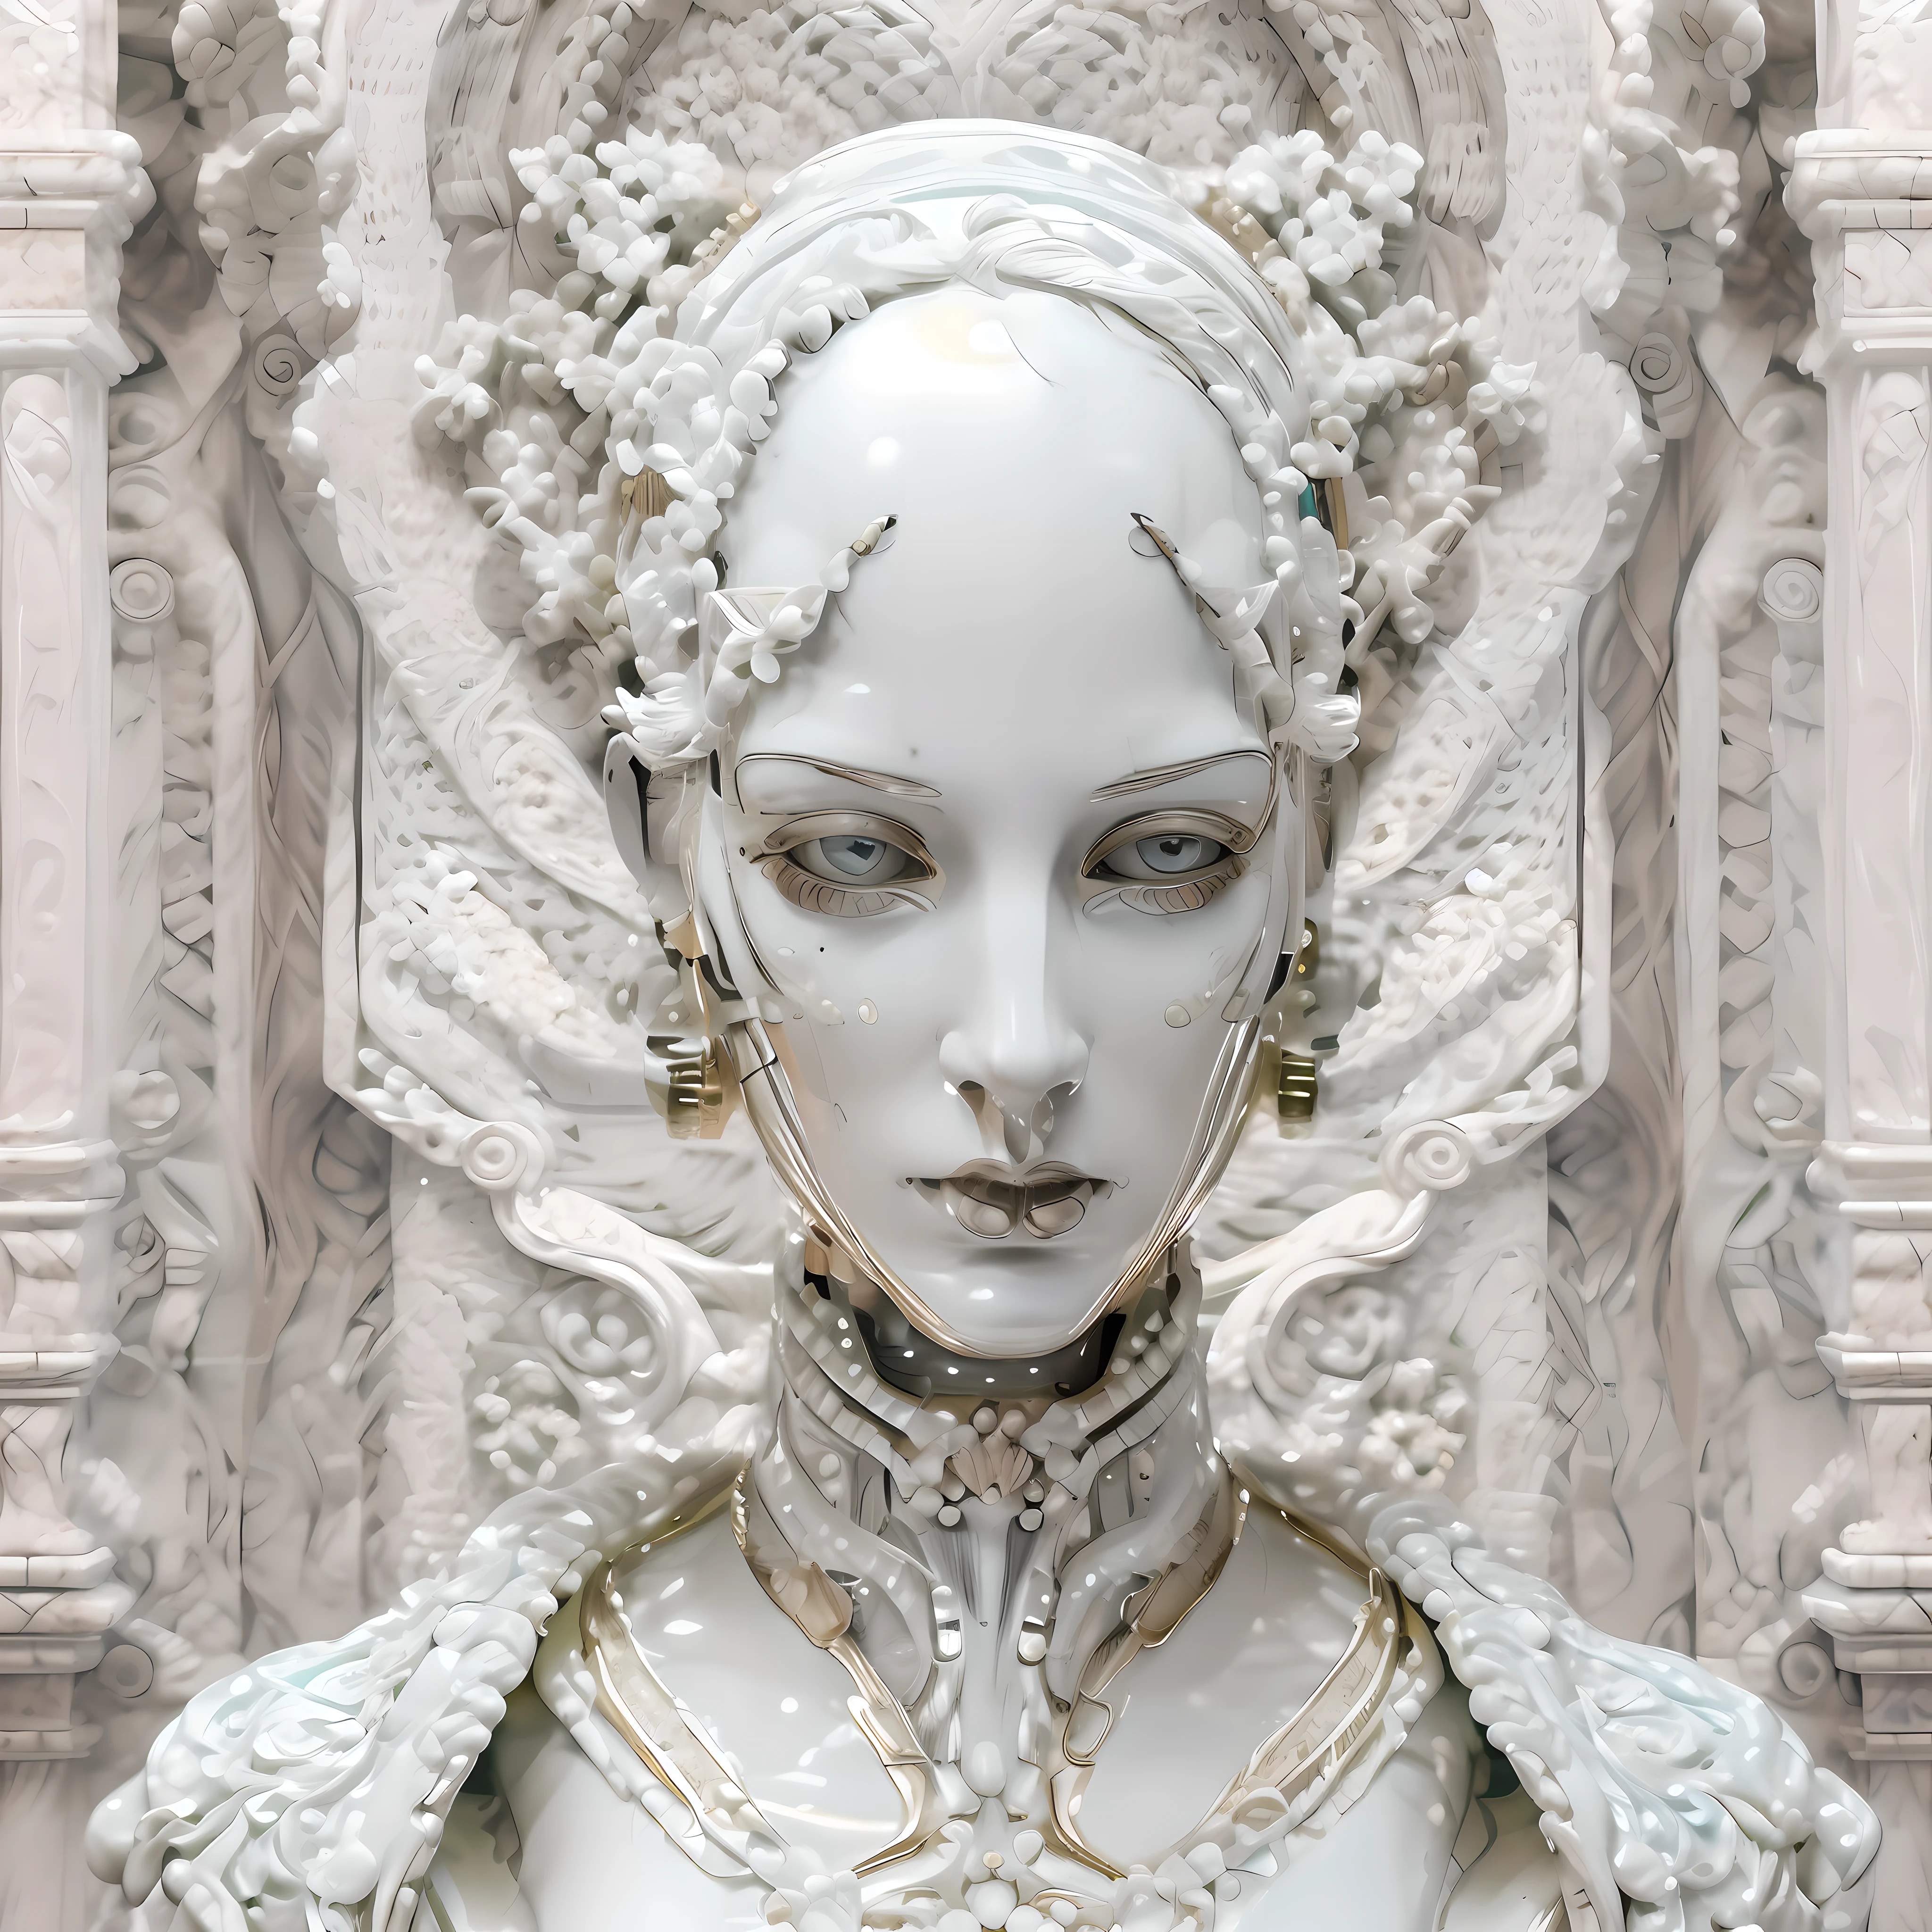 (((아름다운))) 대칭형 여성 안드로이드, 강한 중성적인 얼굴 특징을 지닌, 흰색 대리석을 사용하여 고급 도자기로 만들고 조각한 얼굴, 바로크 미학과 아르 데코 의류.